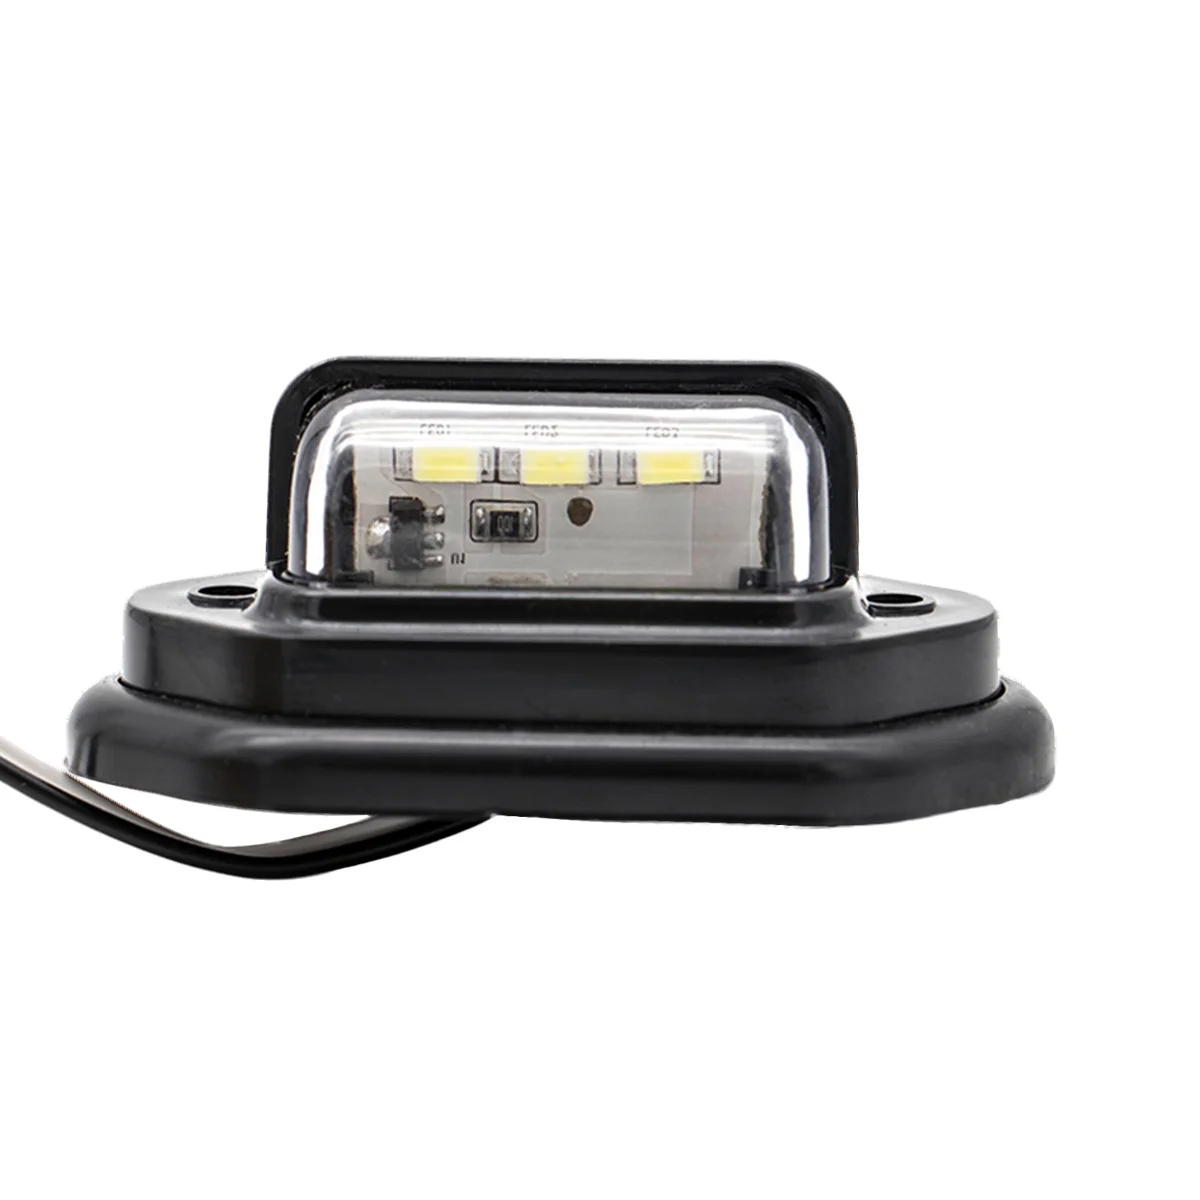 

10 PCS 10-30V 3 LEDs Side Marker Lights License Plate Lamps for Car Truck Trailer Caravan (Black)